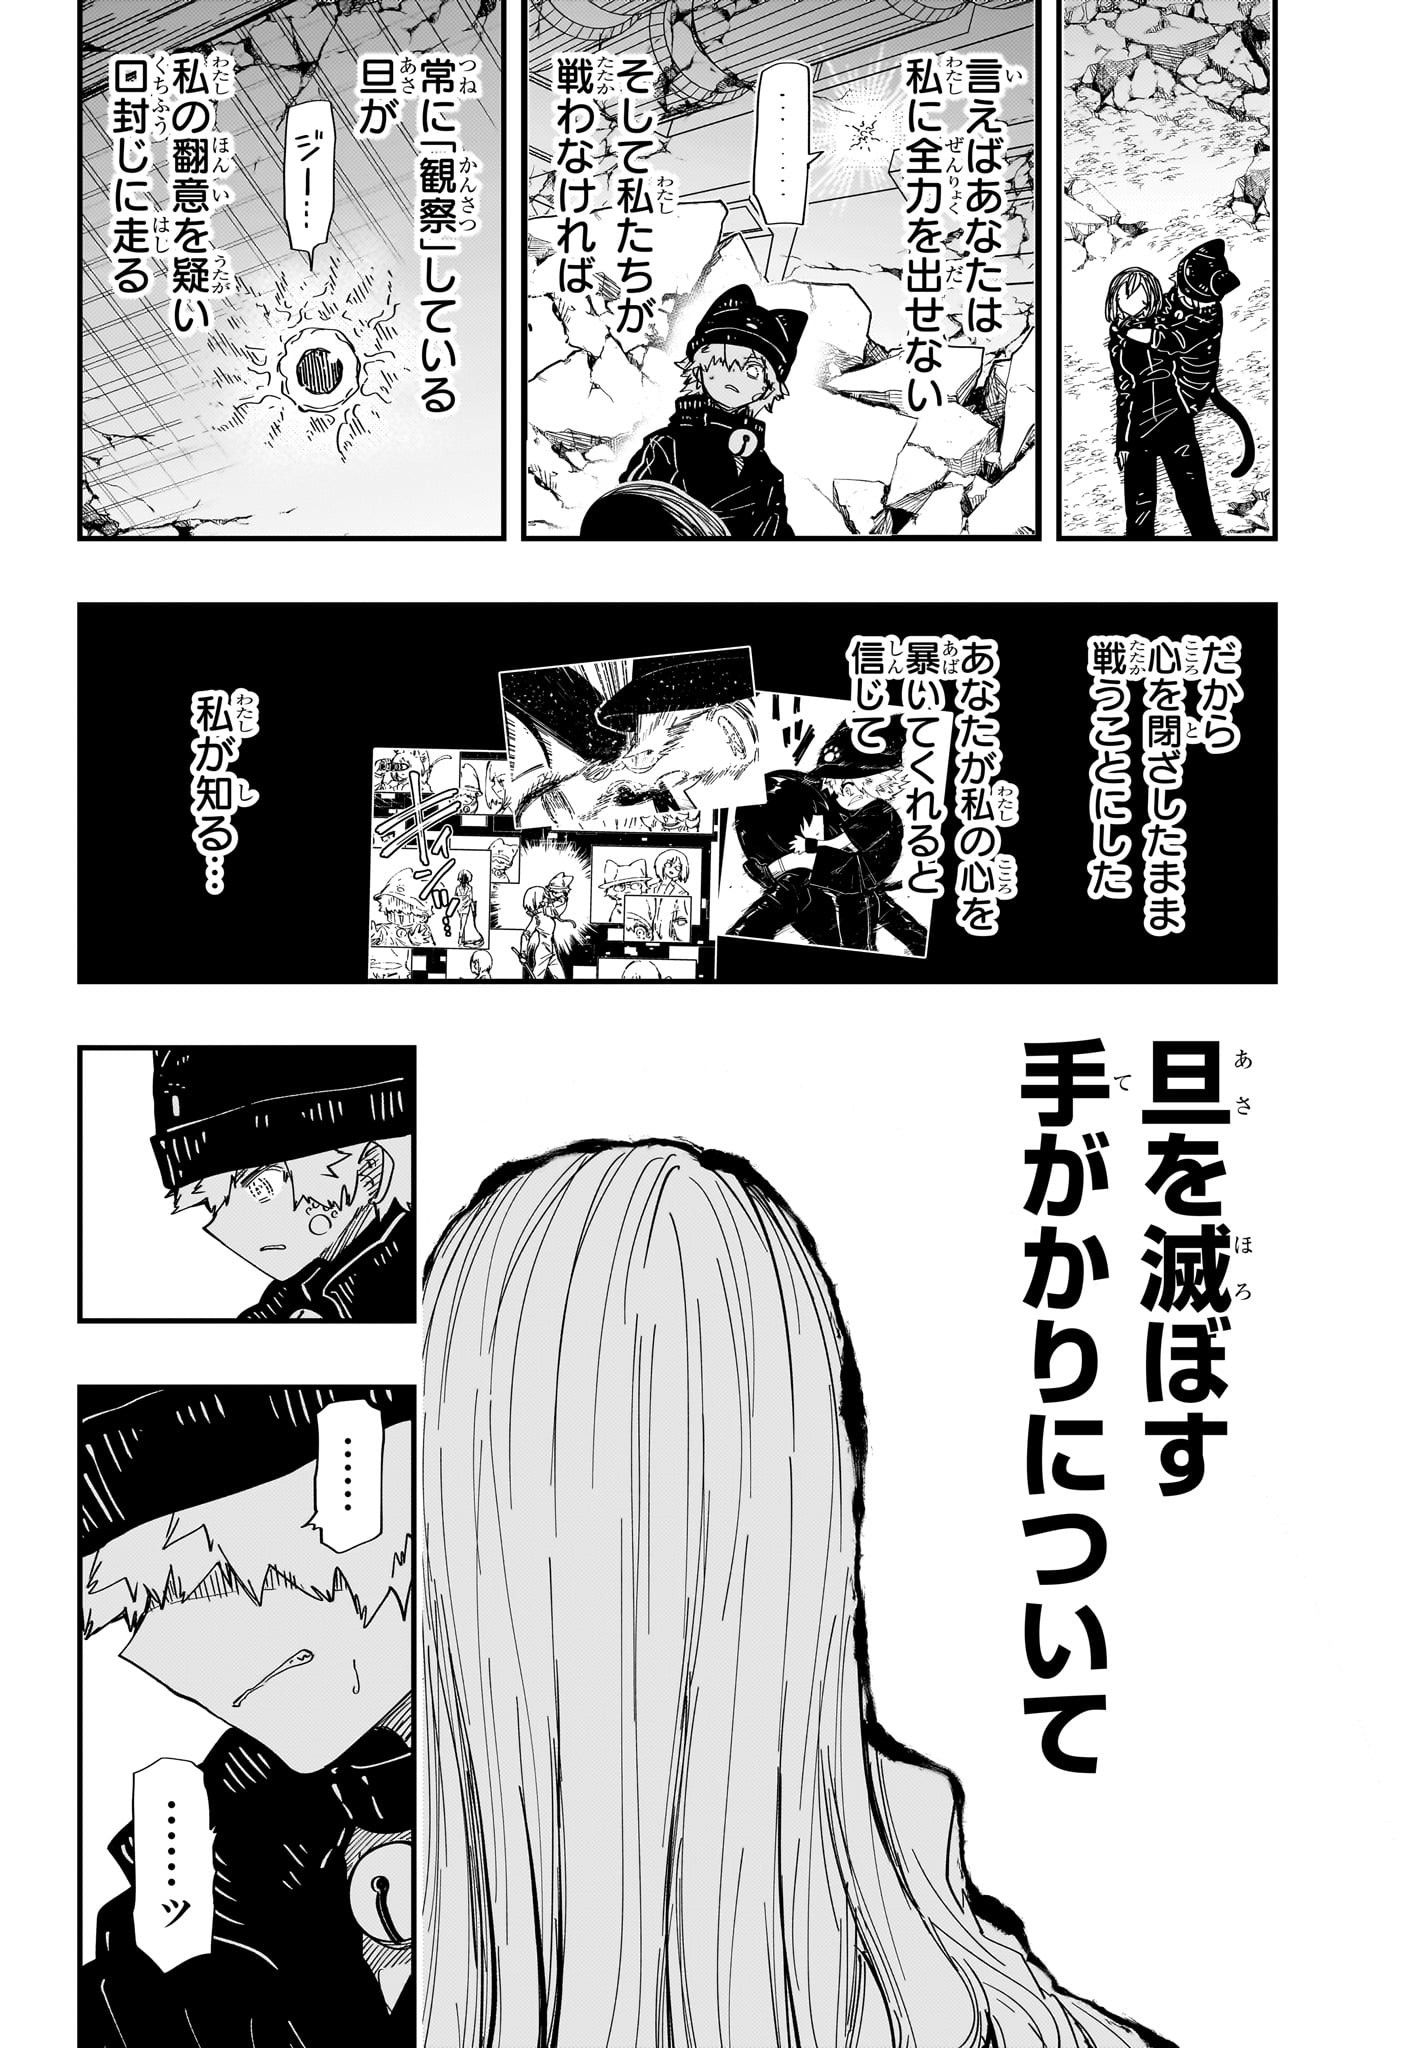 Yozakura-san Chi no Daisakusen - Chapter 234 - Page 6